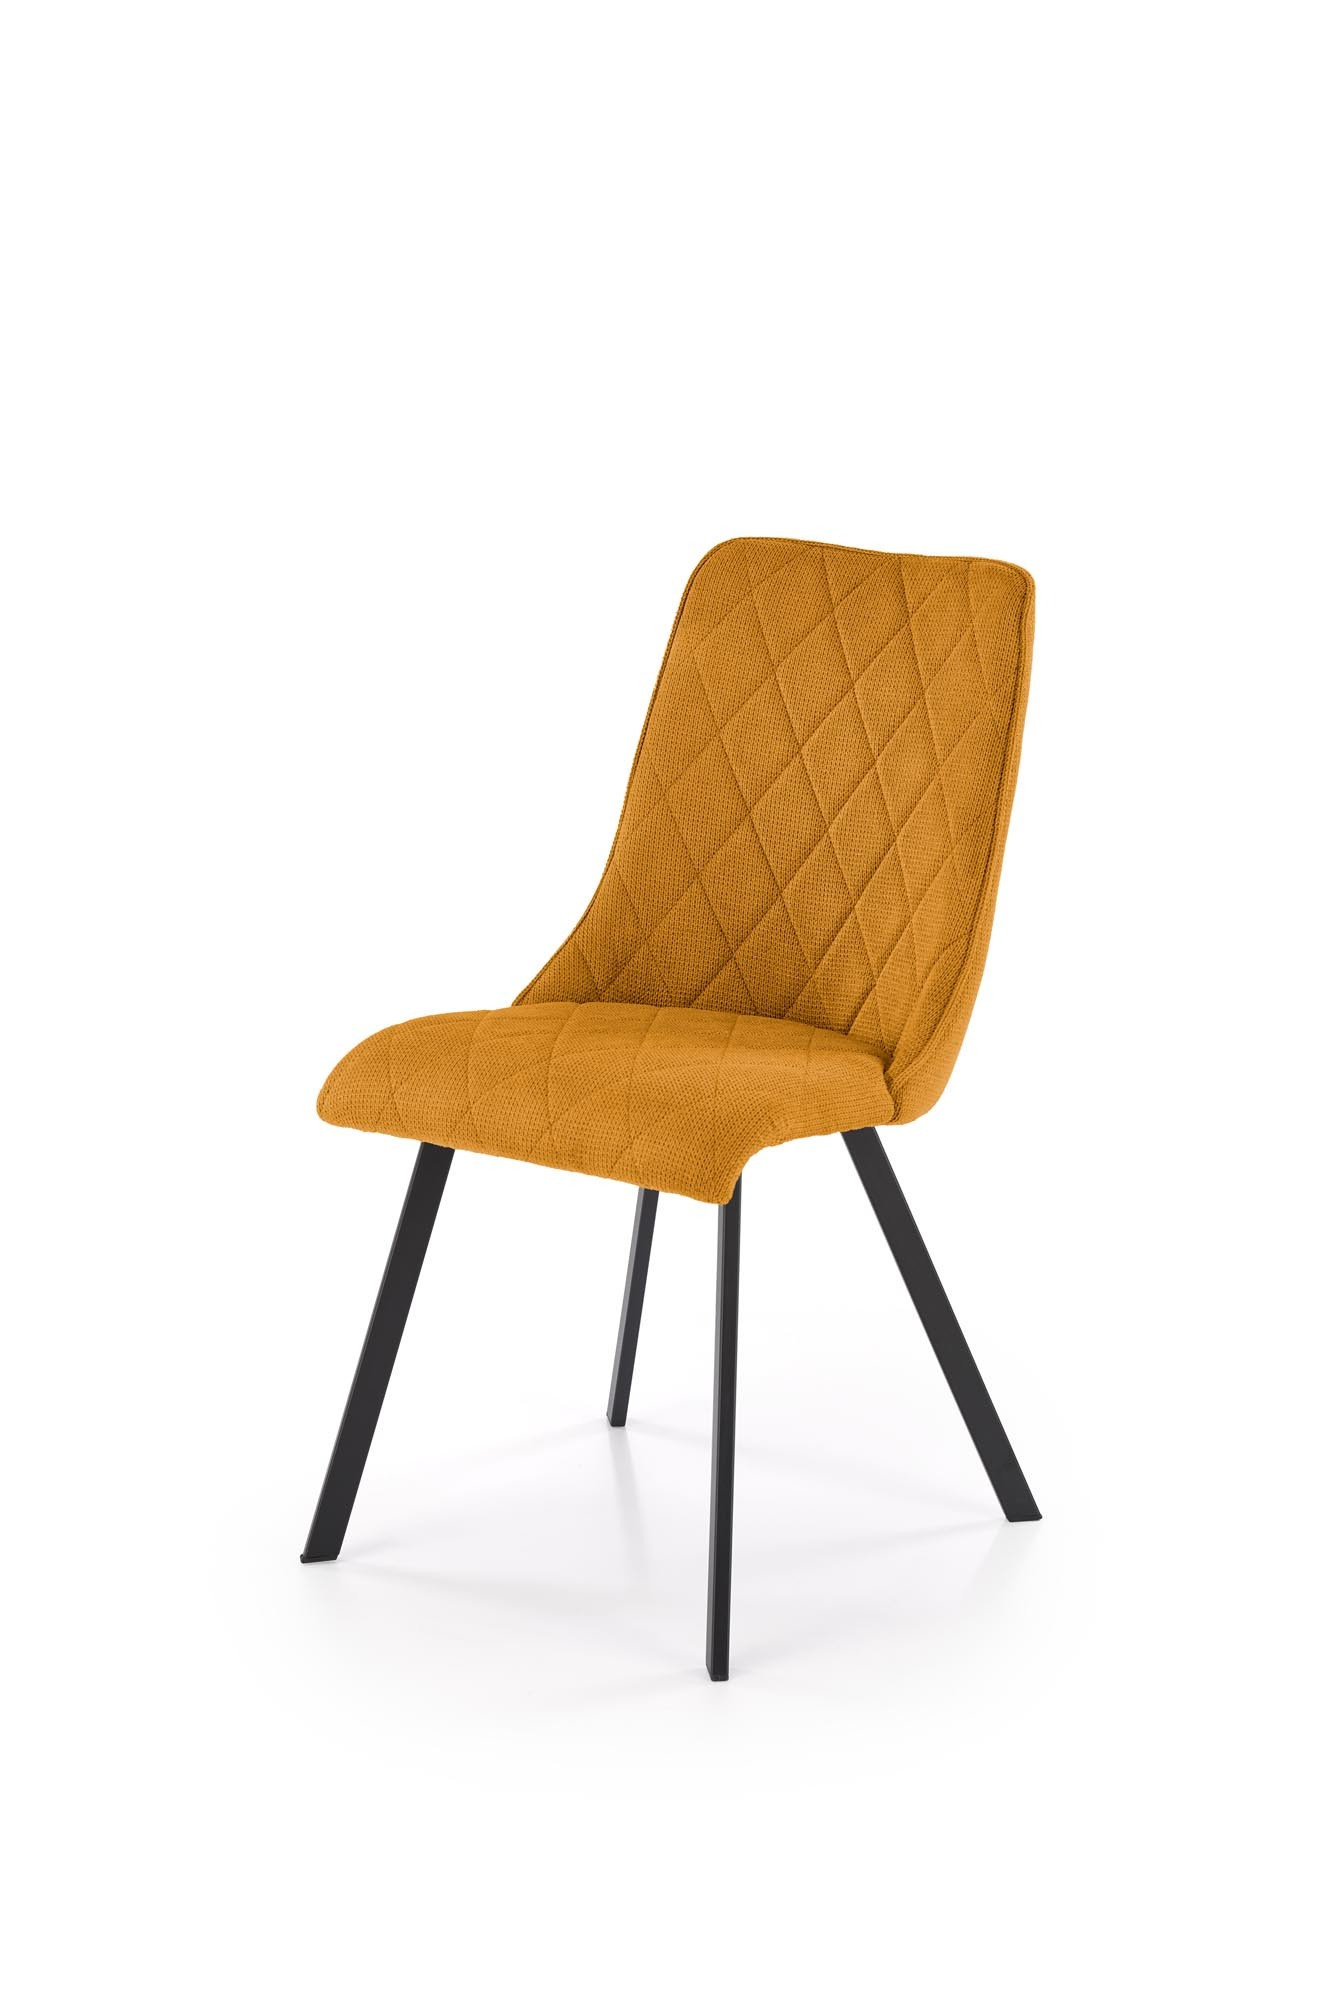 K561 krzesło musztardowy